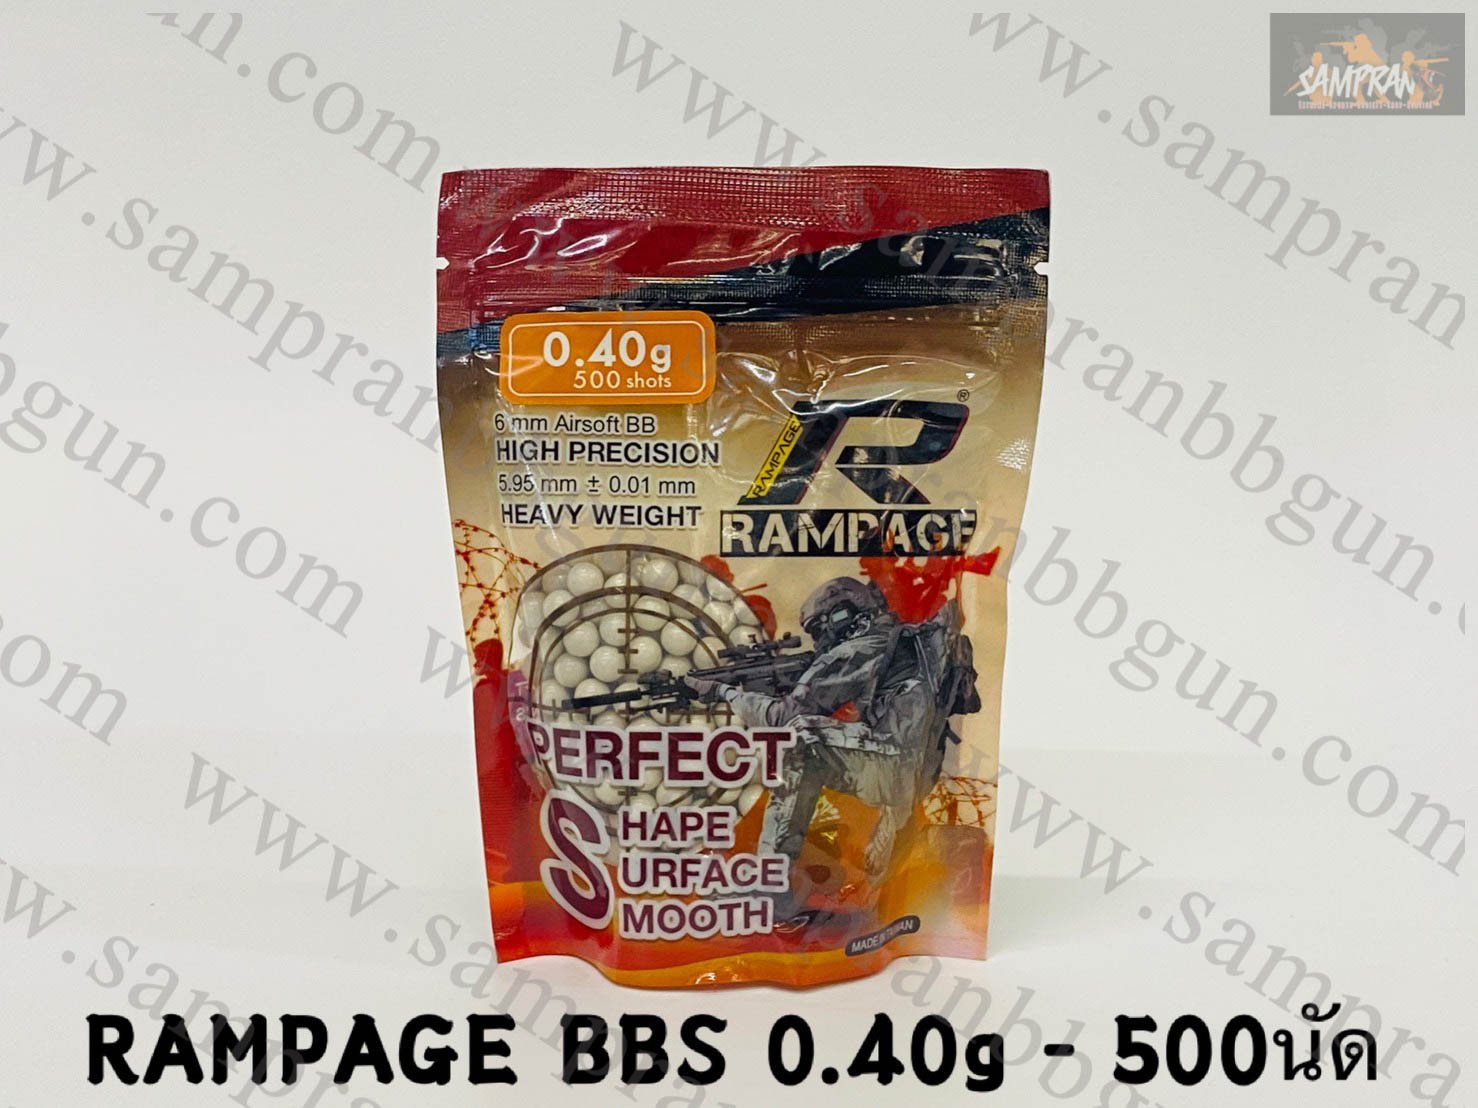 ลูกกระสุน RAMPAGE 0.40g (500นัด) made in taiwan